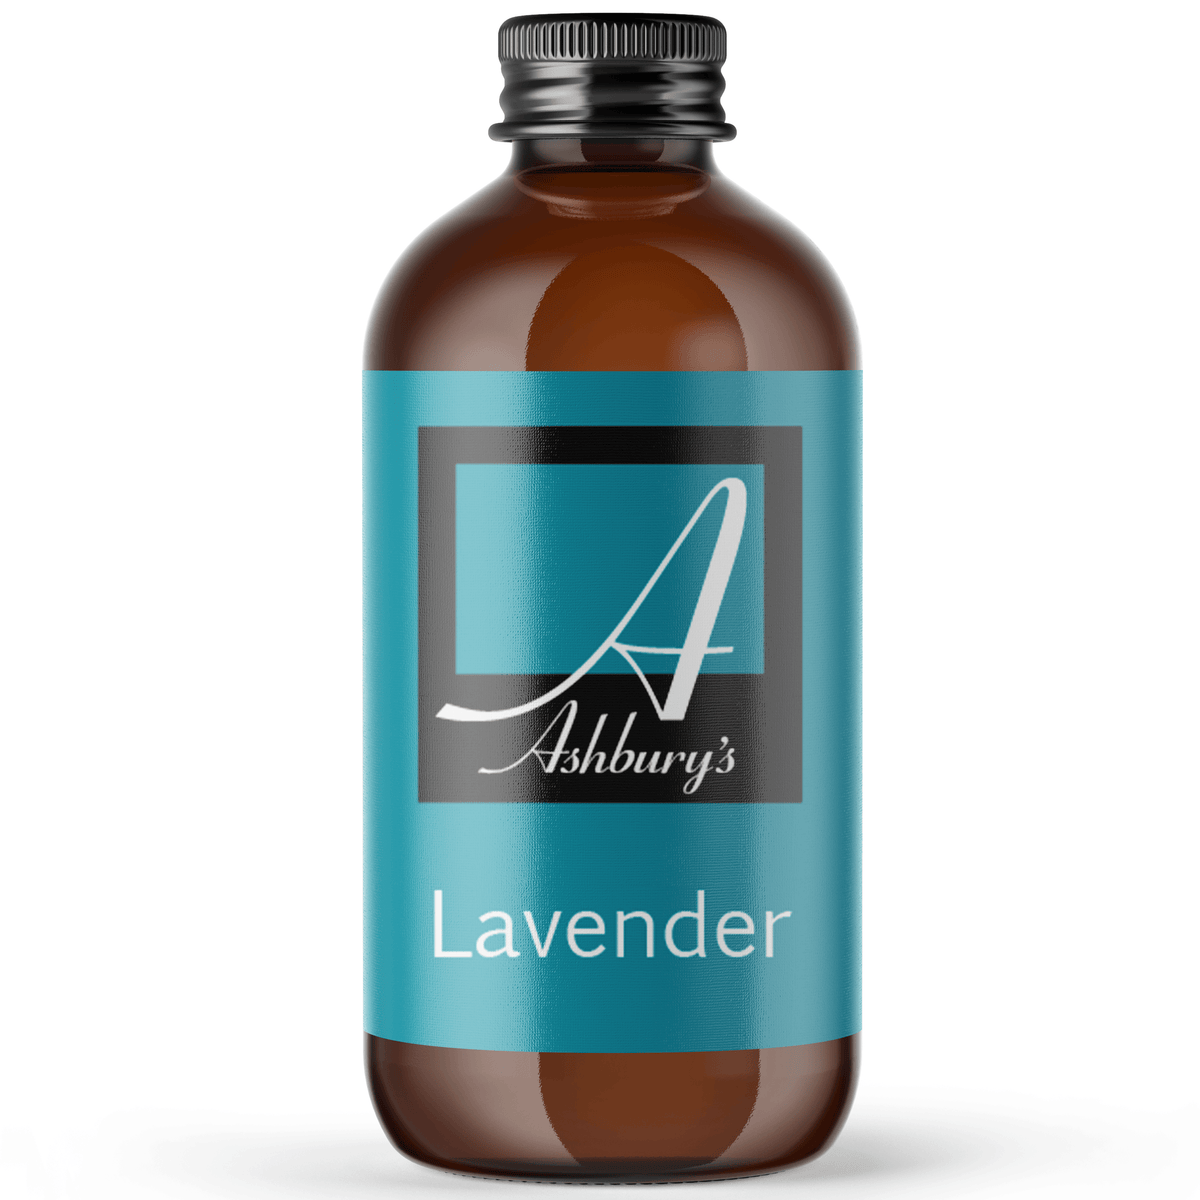 Lavender (Lavandula angustifolium)